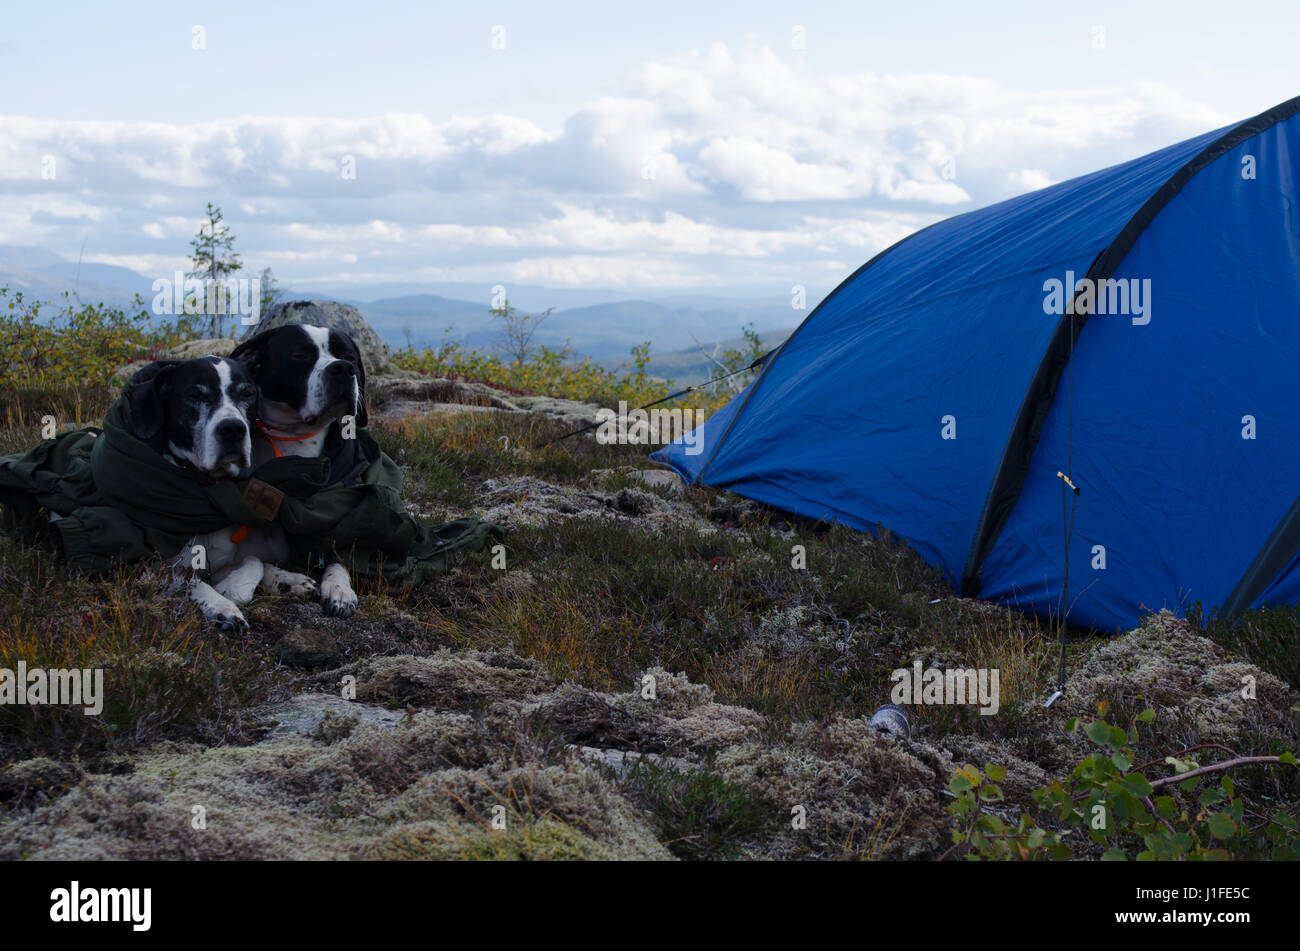 Deux pointeurs anglais reposant en face de blue tente dans un paysage de montagne nordique Banque D'Images